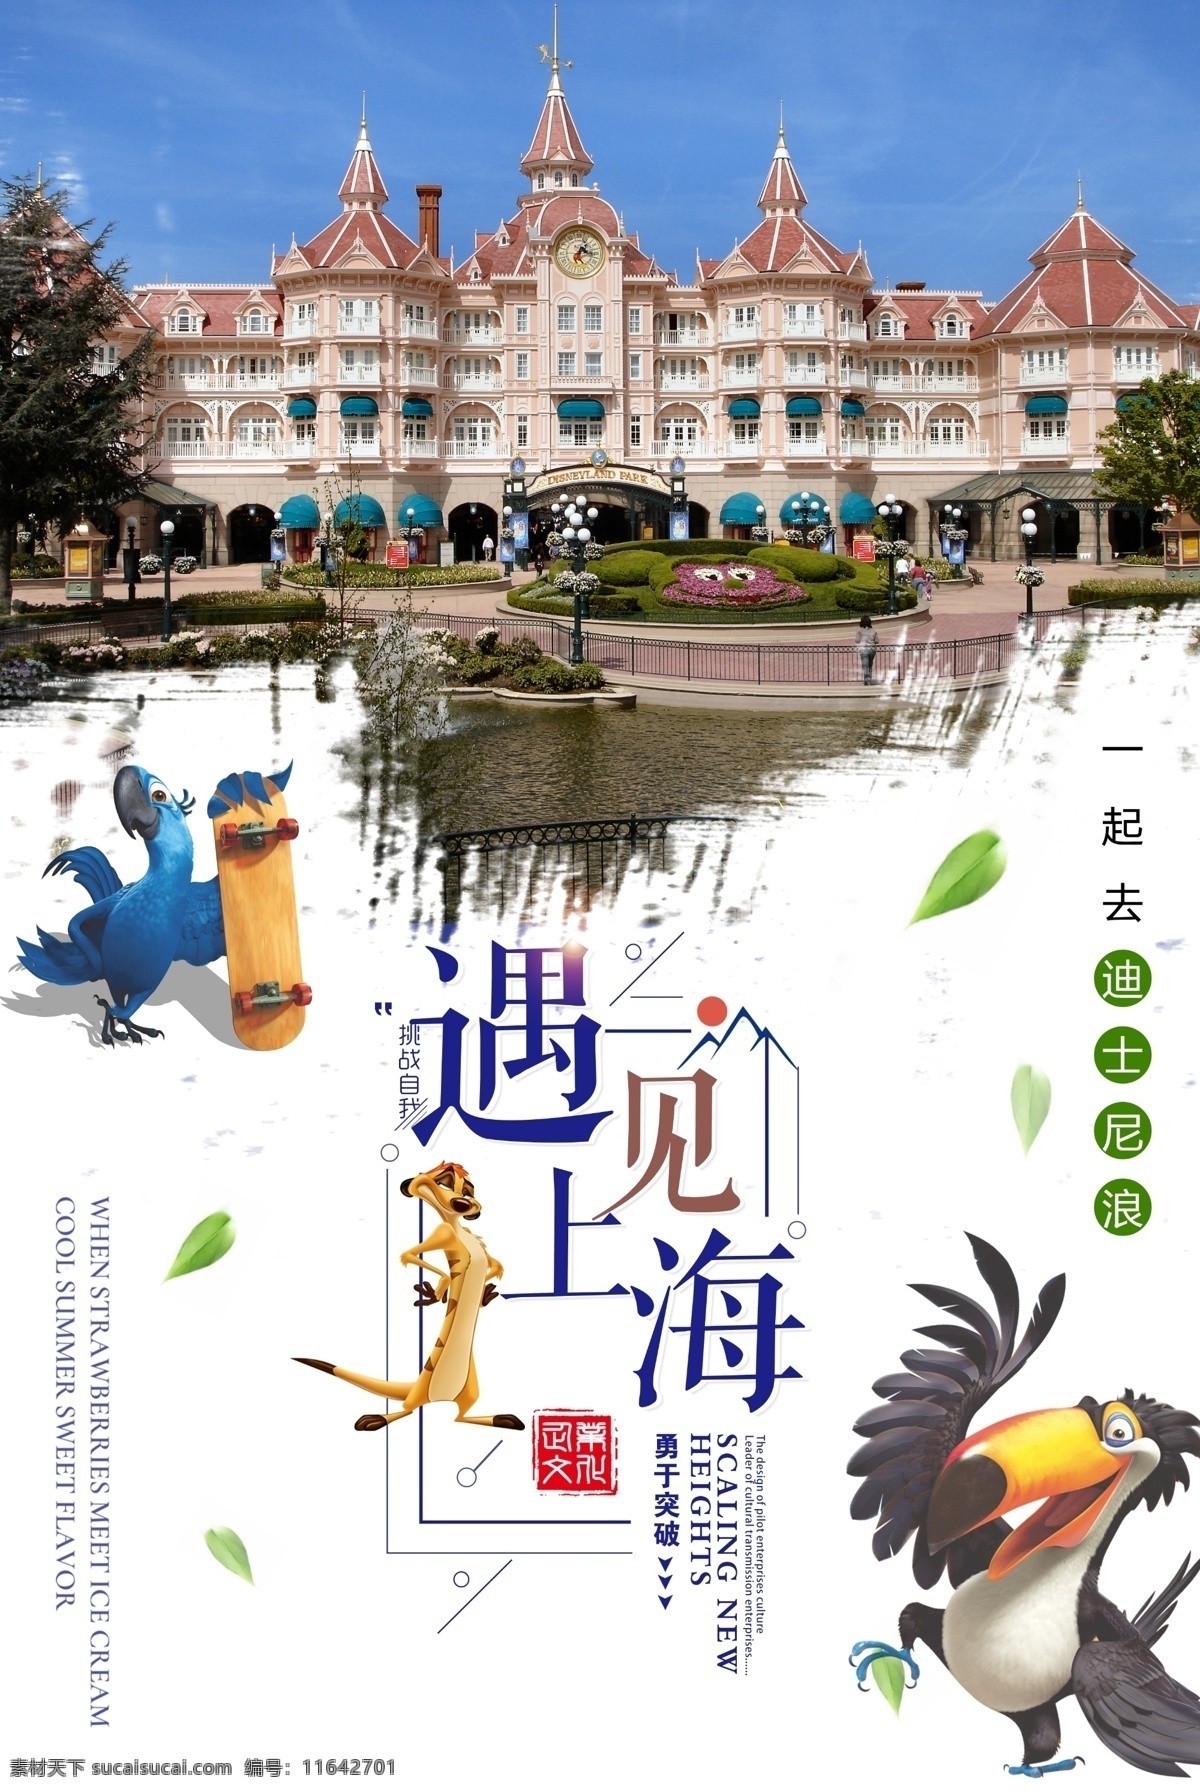 上海 迪士尼 旅游 宣传海报 迪士尼乐园 迪士尼海报 国外旅游 特价 迪士尼传单 香港迪士尼 上海迪士尼 美国迪士尼 迪士尼旅游 旅游促销 出境旅游 卡通迪士尼 迪士尼嘉年华 狂欢节 儿童 公园